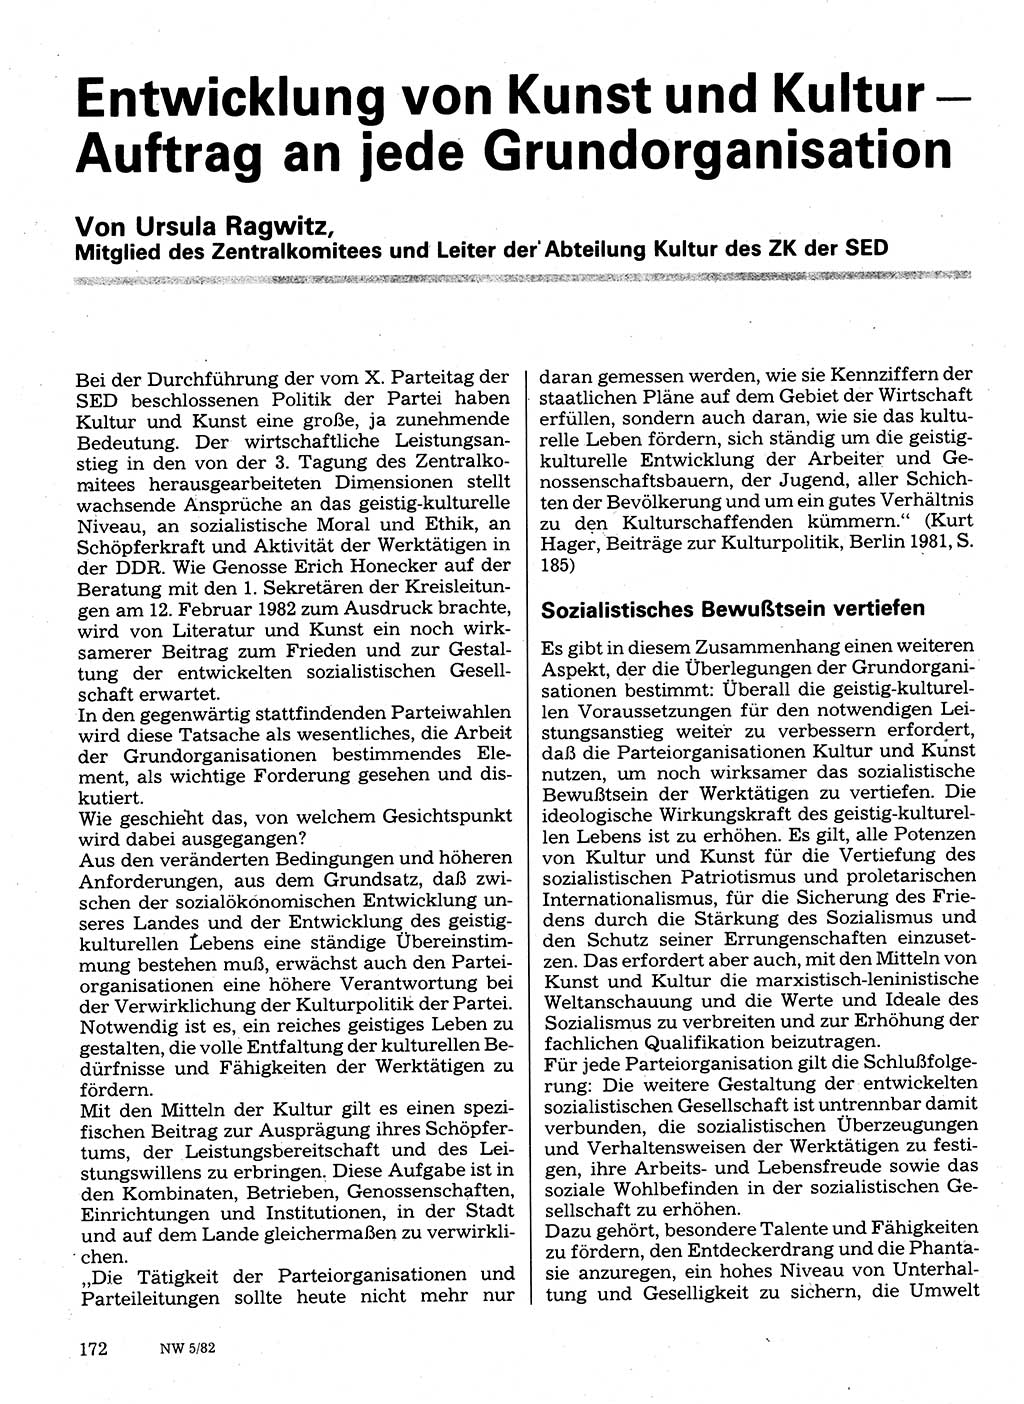 Neuer Weg (NW), Organ des Zentralkomitees (ZK) der SED (Sozialistische Einheitspartei Deutschlands) für Fragen des Parteilebens, 37. Jahrgang [Deutsche Demokratische Republik (DDR)] 1982, Seite 172 (NW ZK SED DDR 1982, S. 172)